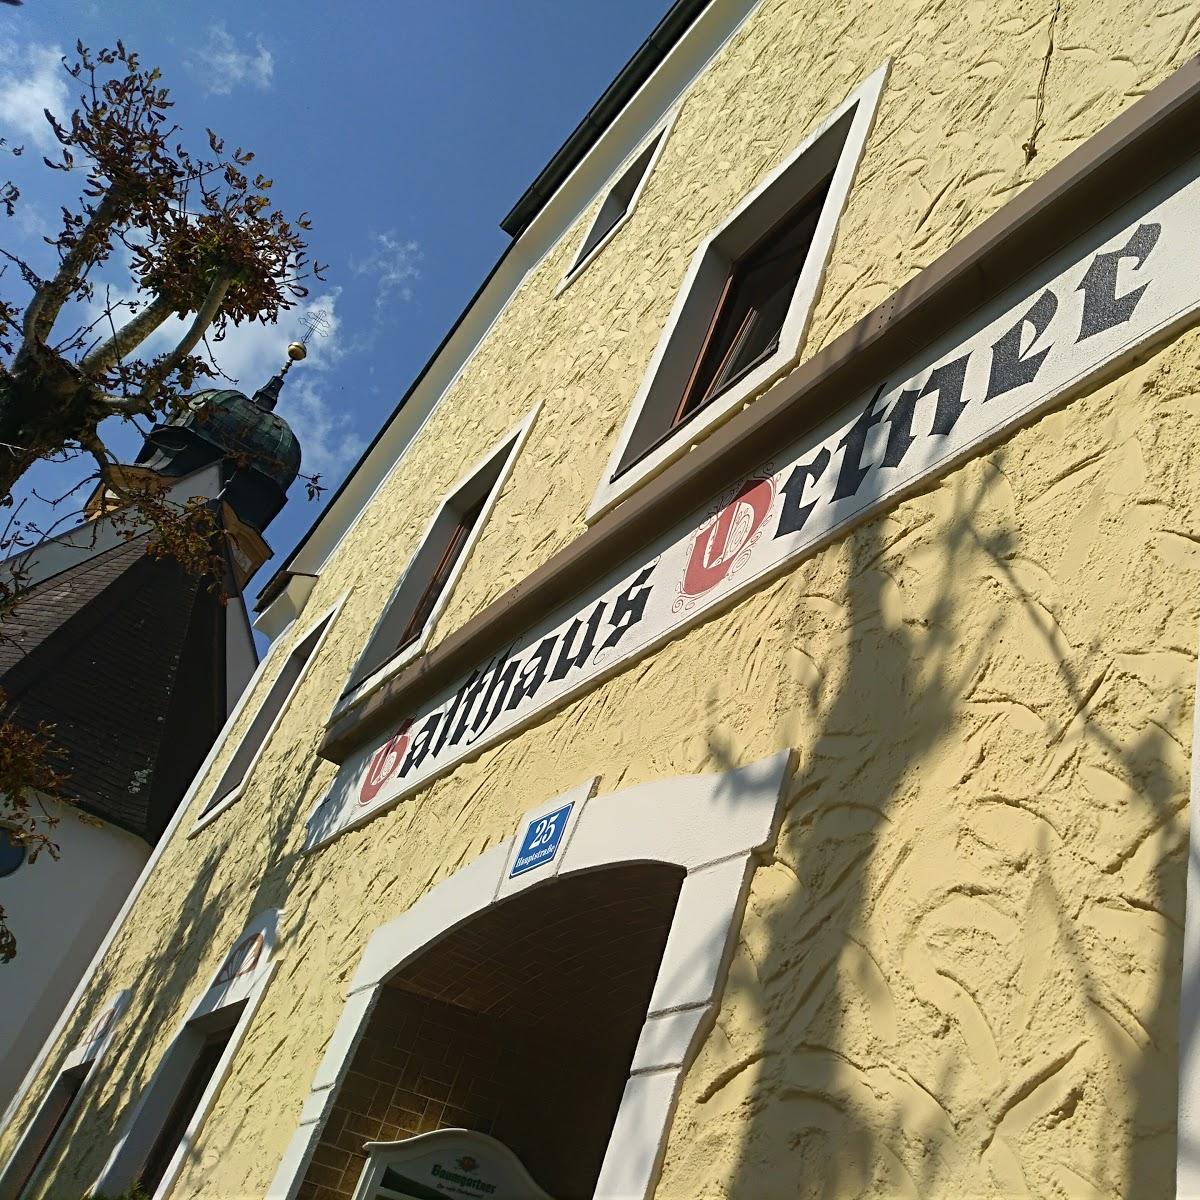 Restaurant "Gasthaus Ortner" in Sankt Willibald